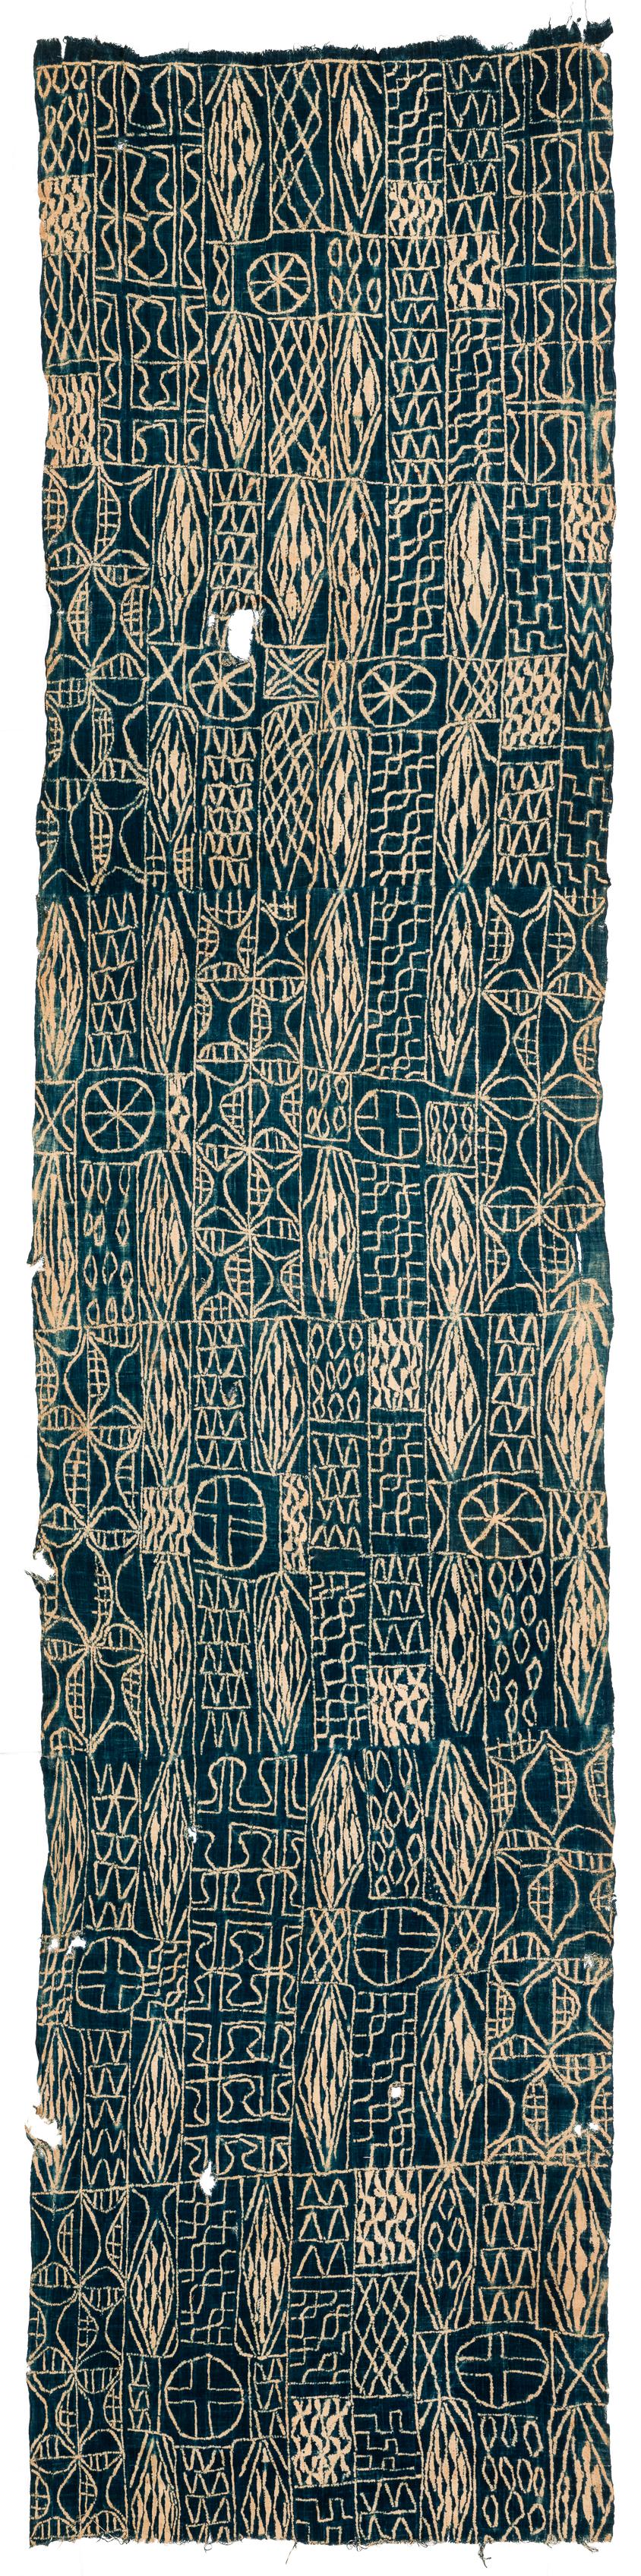 Un magnifique textile cérémoniel teint à l'indigo en provenance du Cameroun. Il ferait une superbe tenture murale. Un bon exemple. Mesures : 3'2'' x 14'1''.